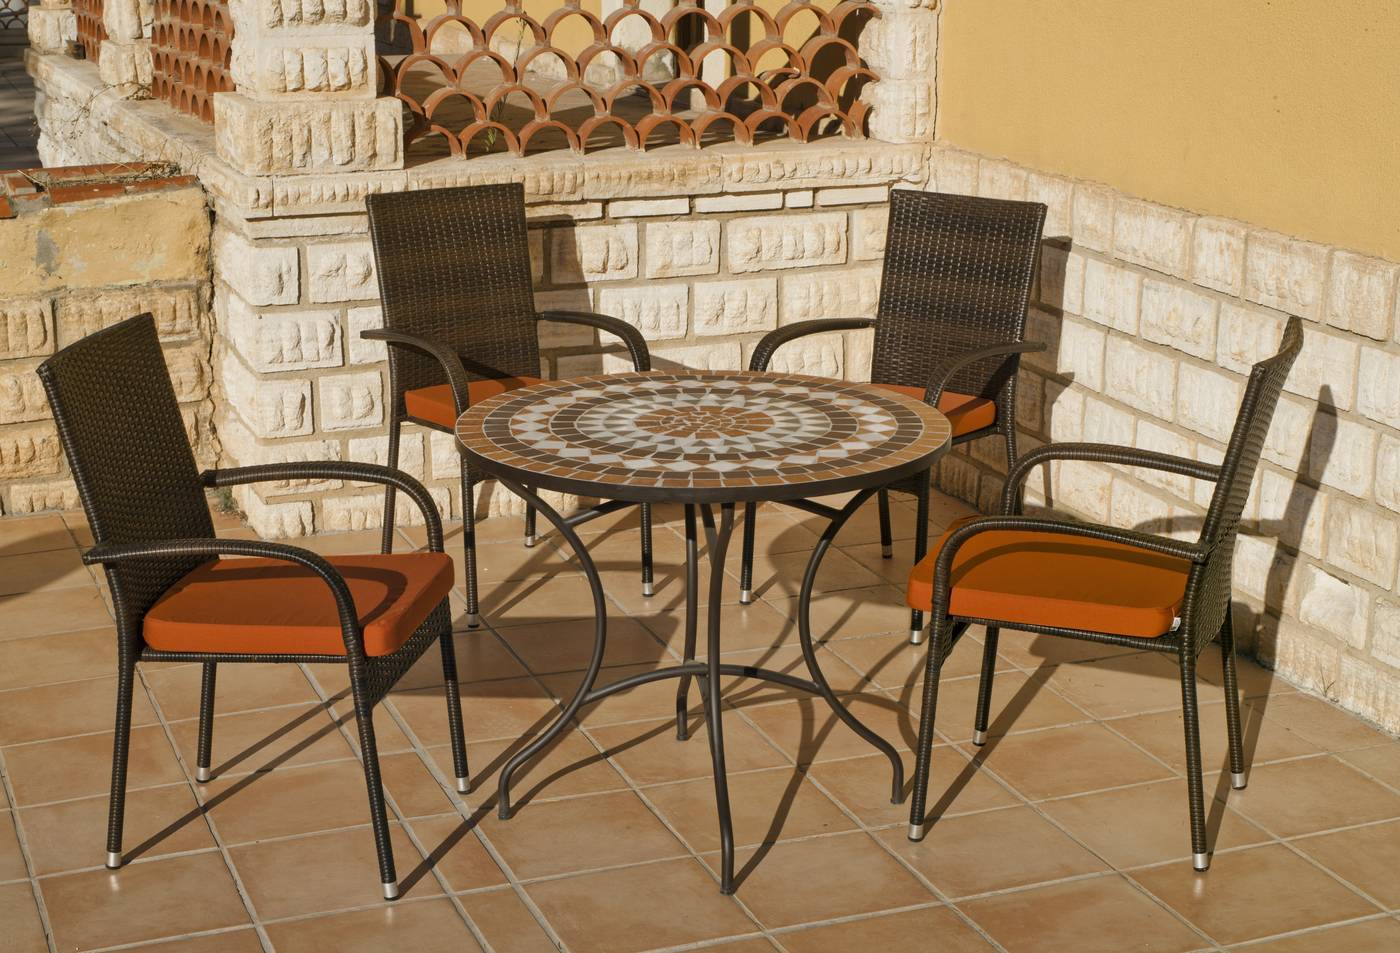 Conjunto para jardín o terraza de forja: 1 mesa con panel mosaico + 4 sillones de ratán sintético + 4 cojines